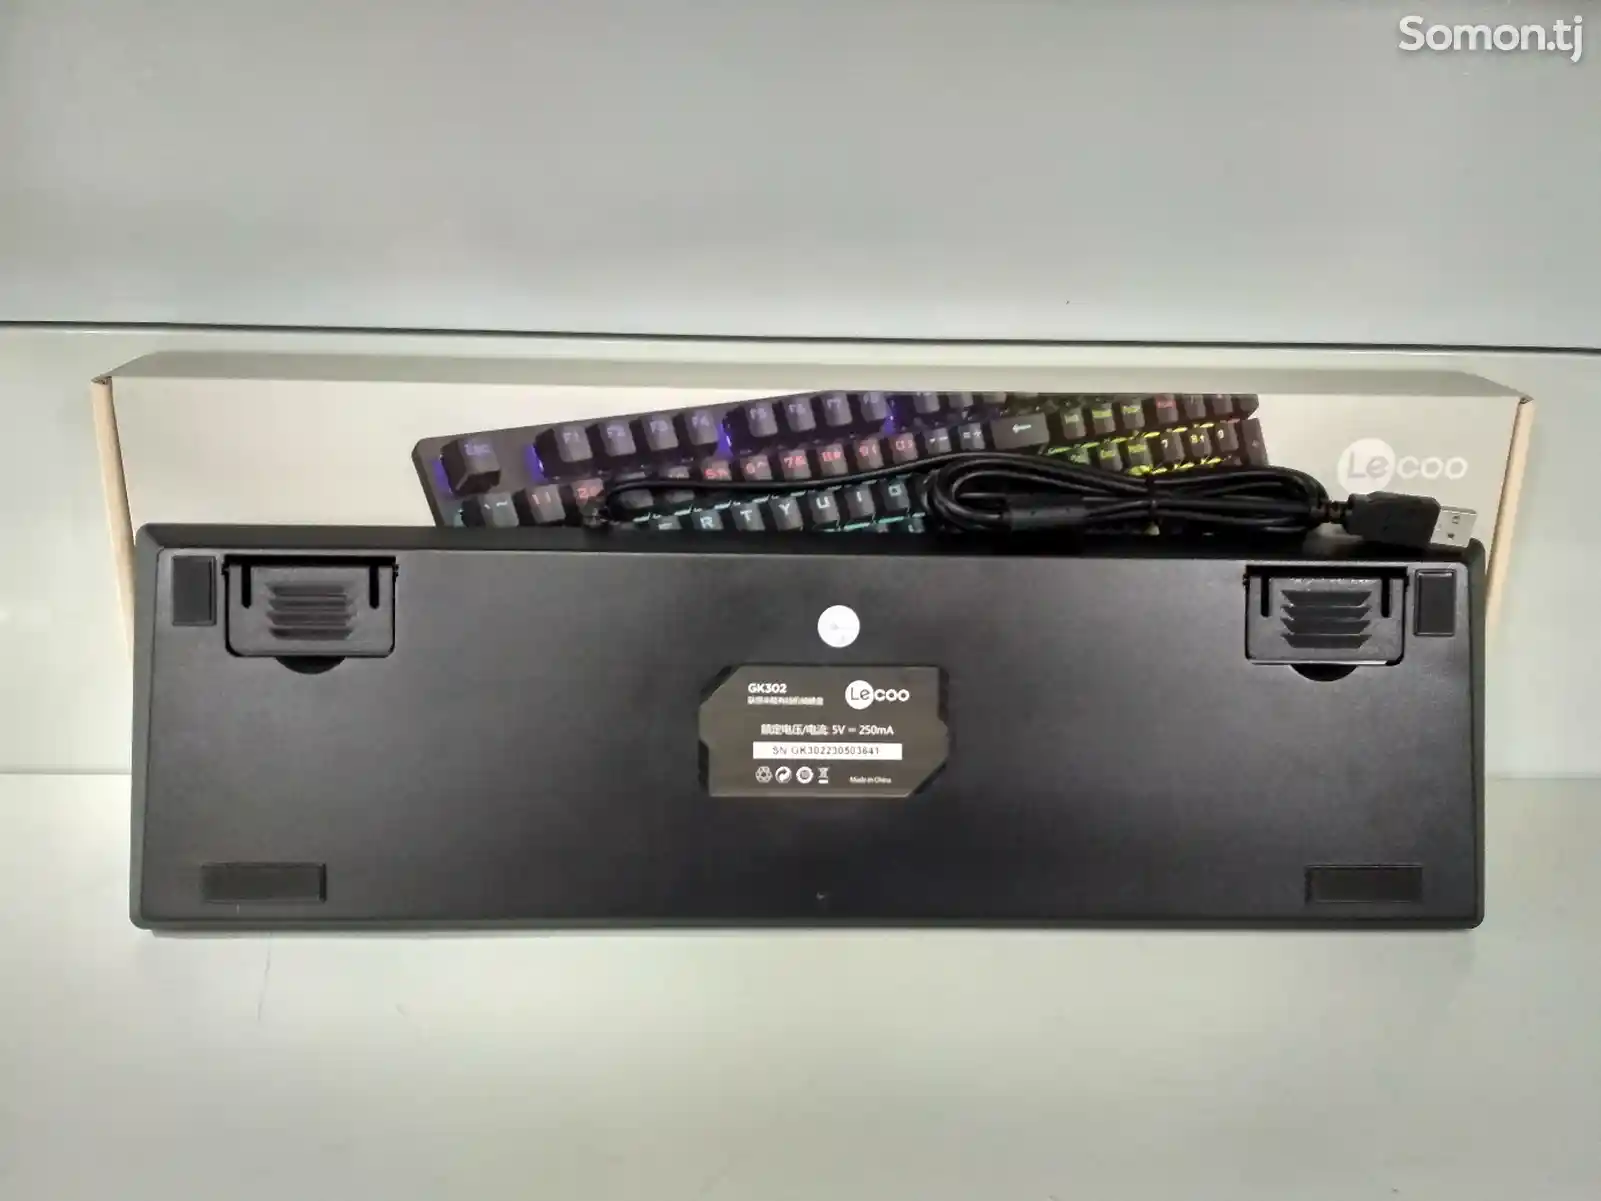 Механическая клавиатура с Led подсветкой Lecoo Gk302-5